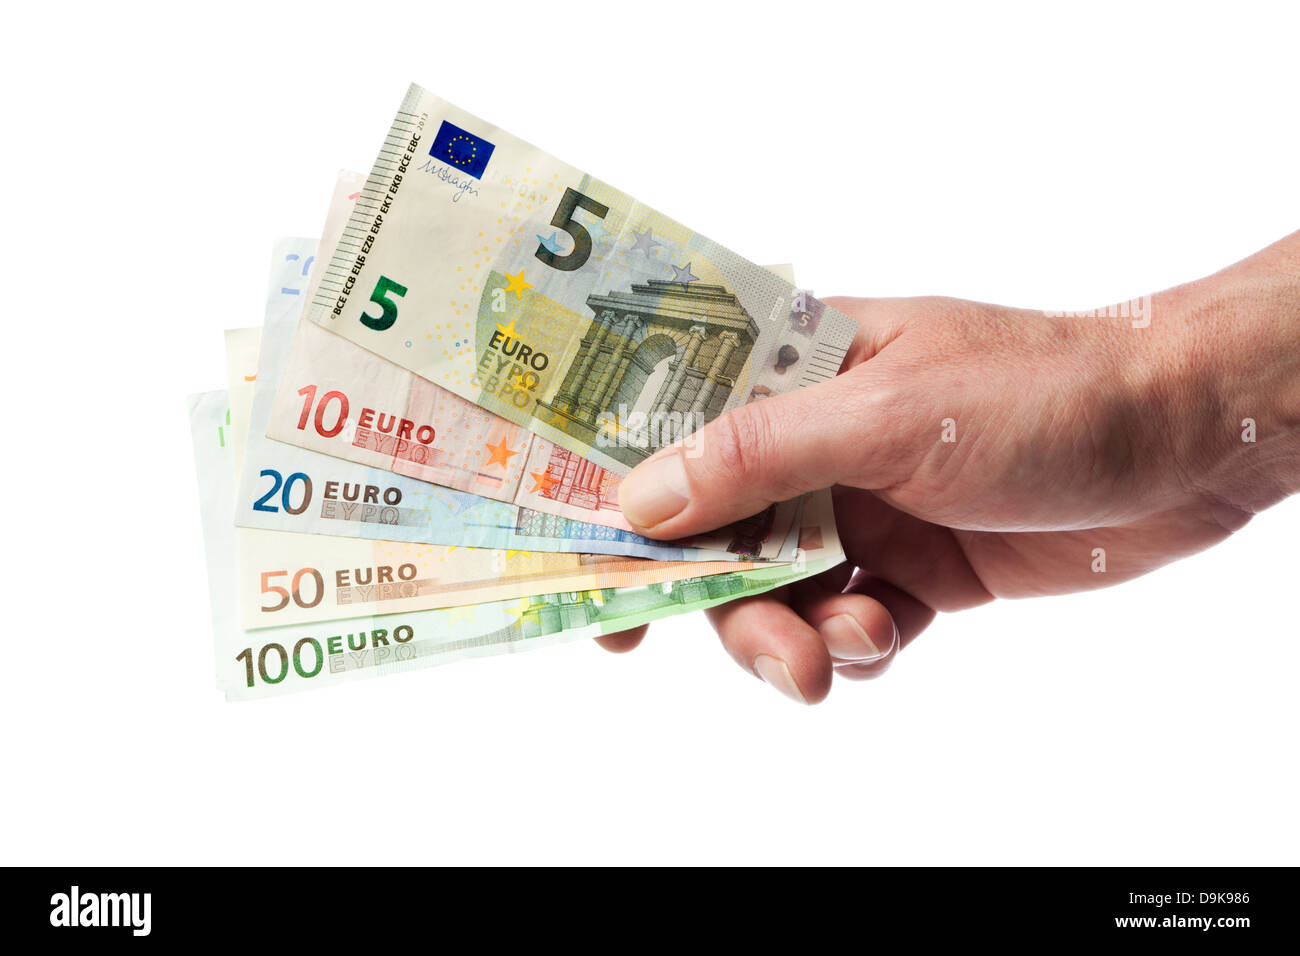 Hombre mano sosteniendo la moneda europea facturas desde 5 a 100 euros en abanico, aislado sobre fondo blanco. Foto de stock